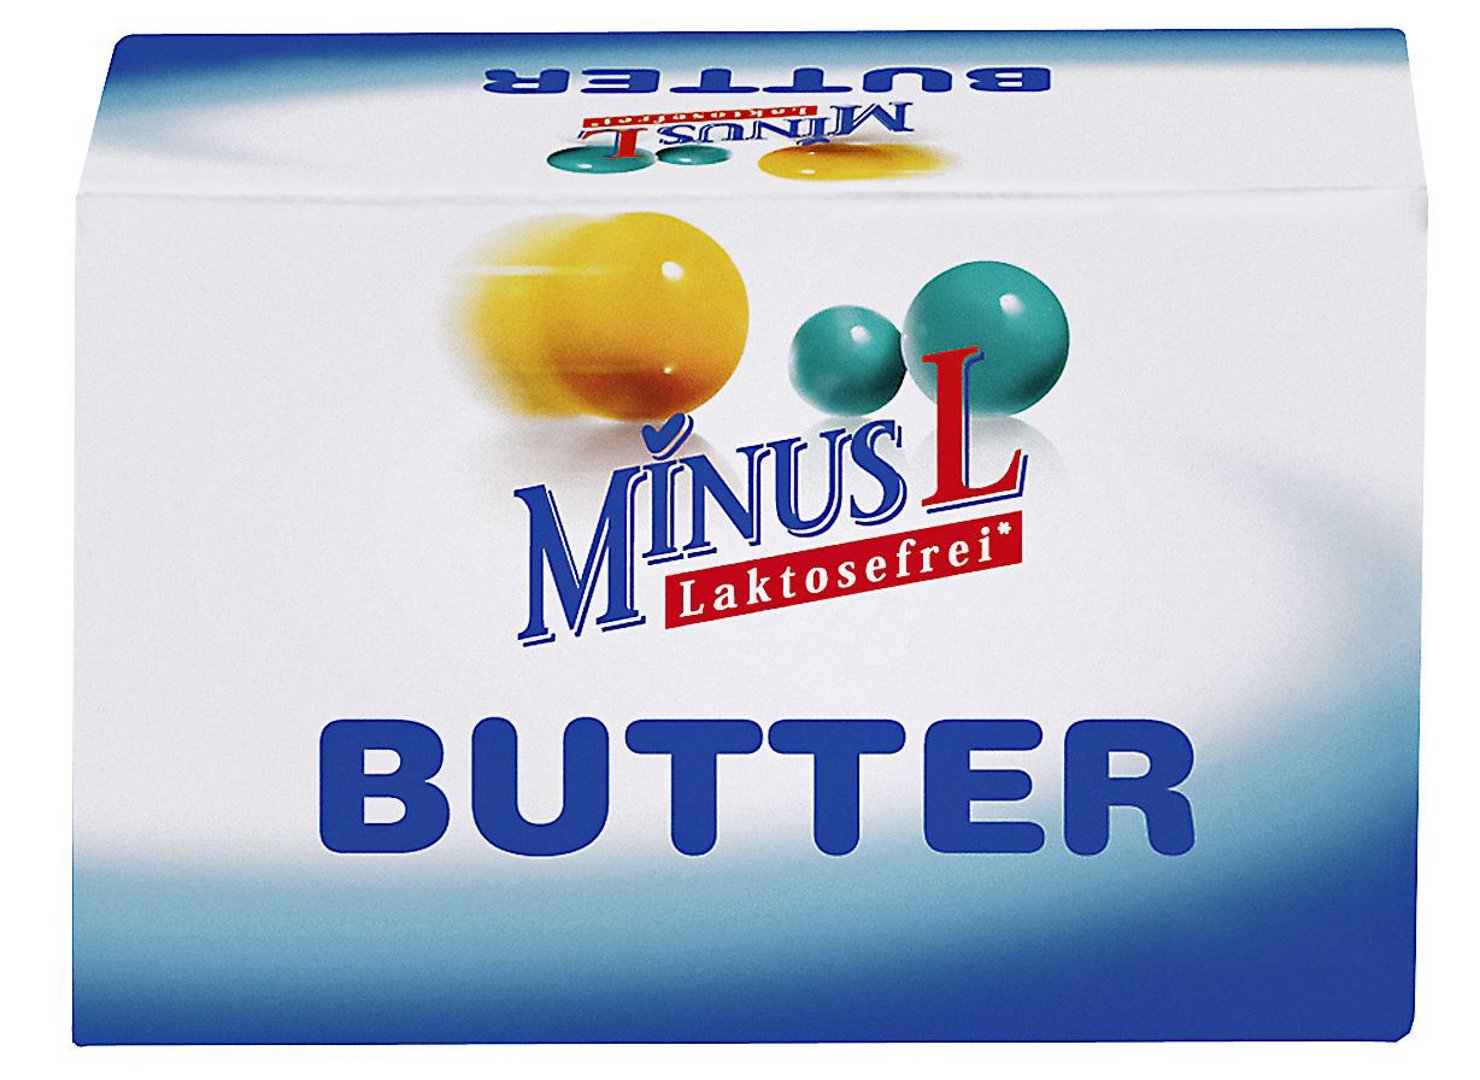 MinusL - laktosefreie Butter 82 % Fett 125 g Packung